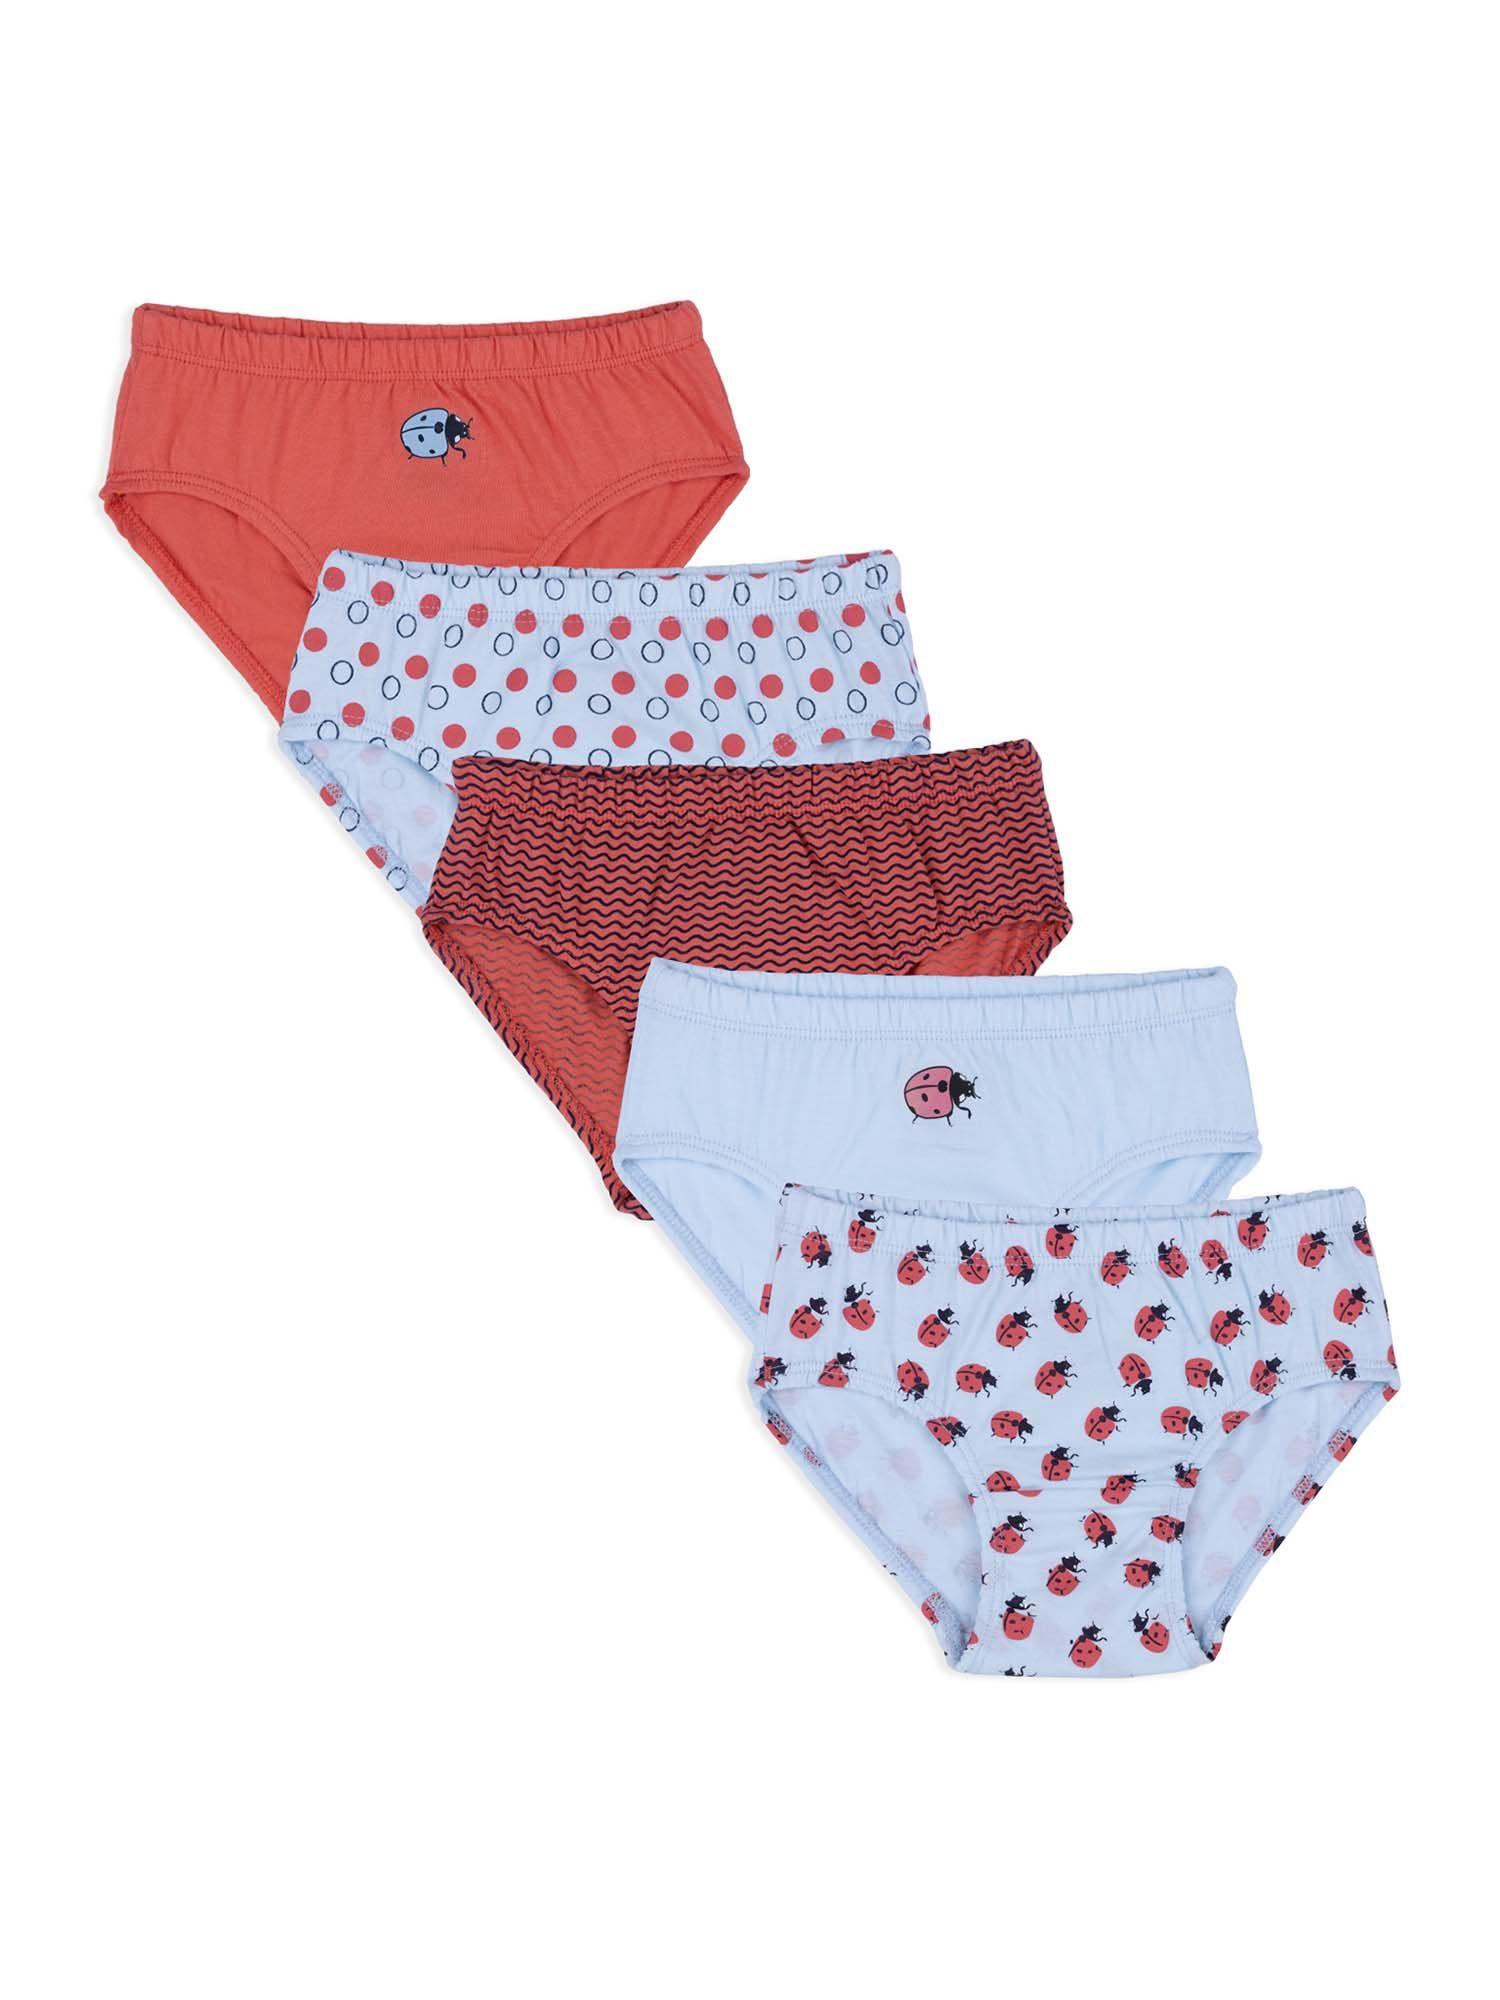 girls-cotton-printed-panties-underwear-innerwear-multicolor-(pack-of-5)